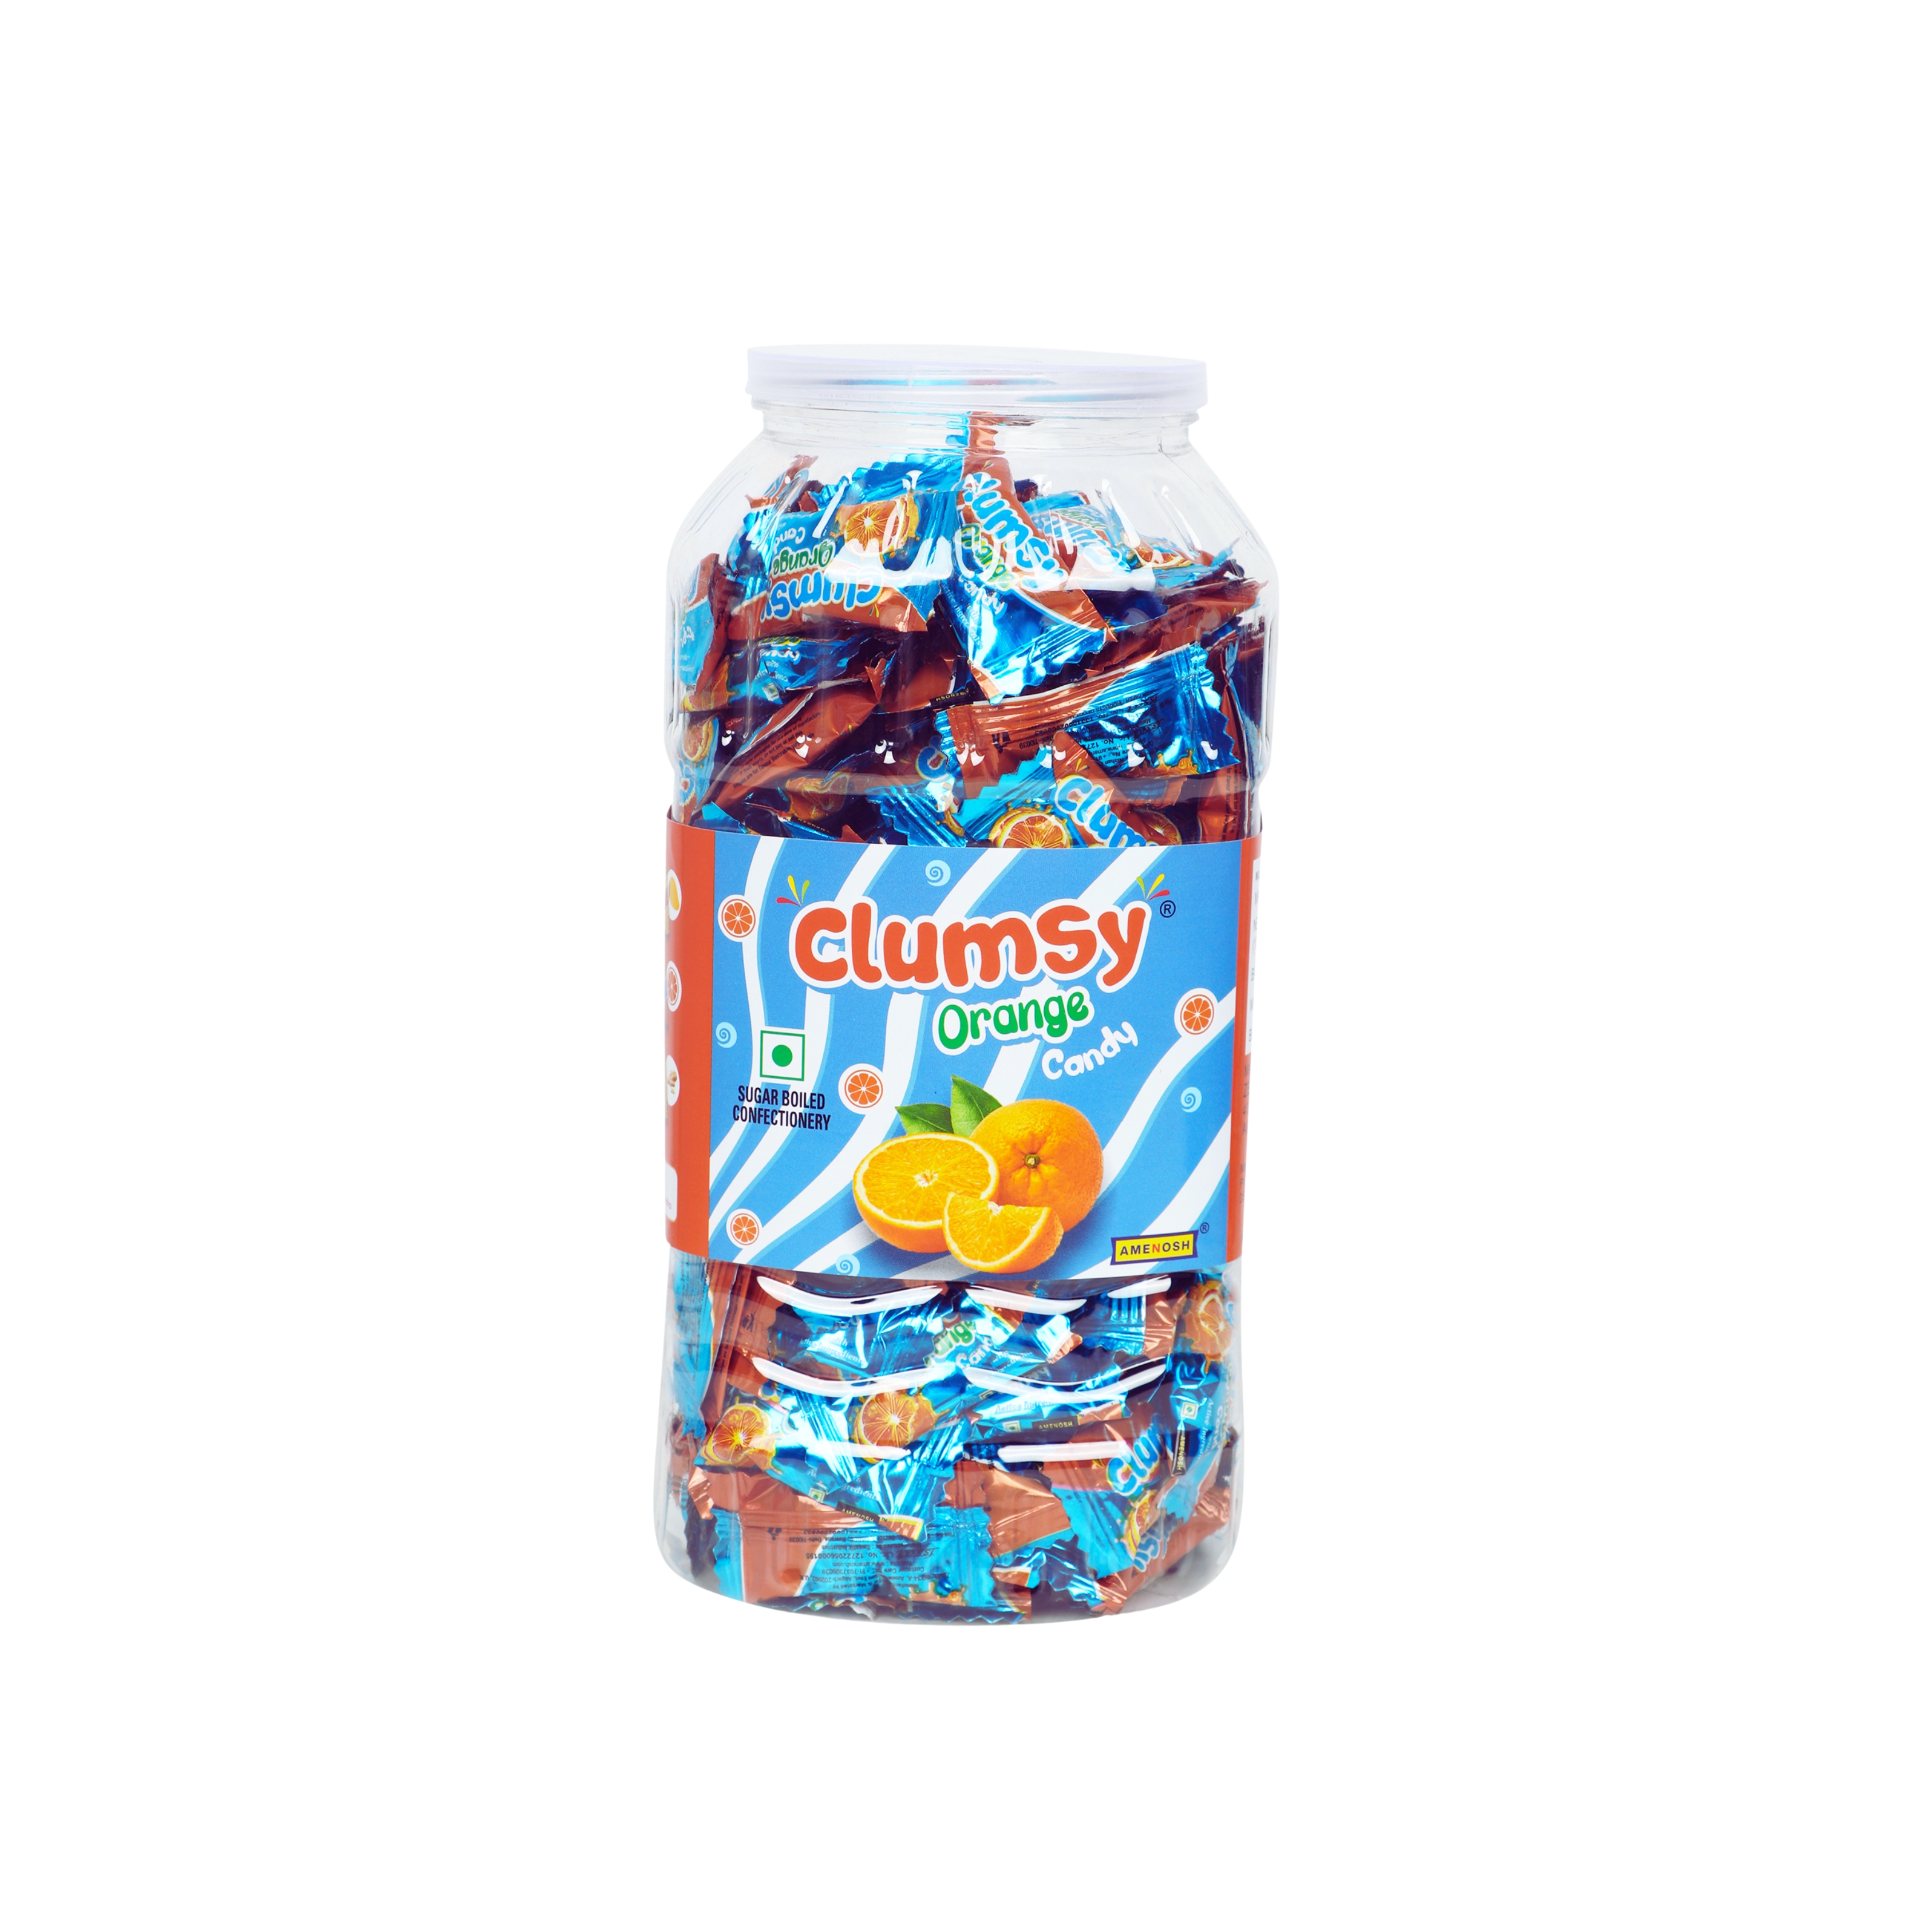 Clumsy Orange candy Jar, 170 candy units